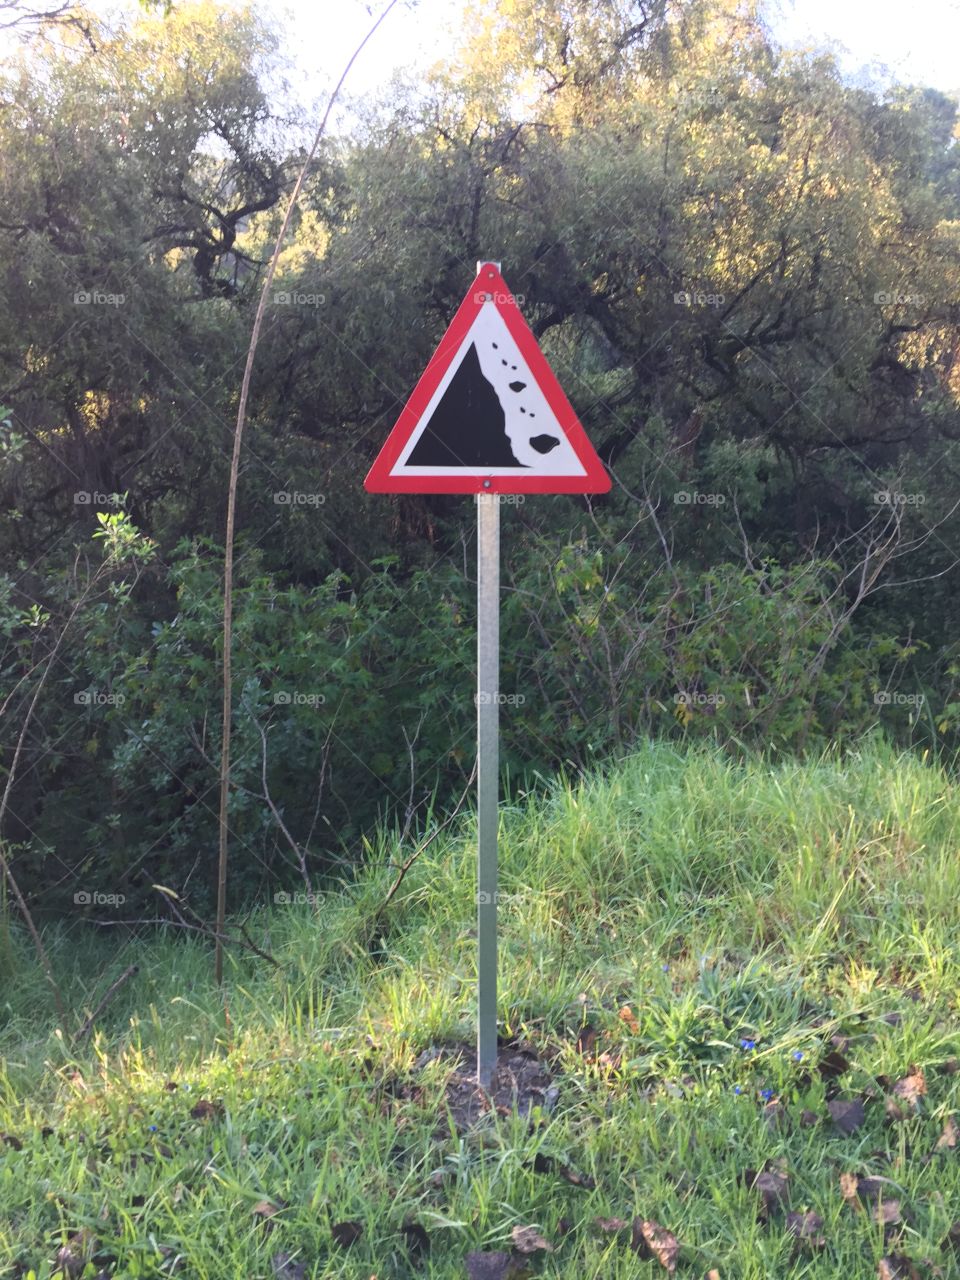 informative signs 
landslide area